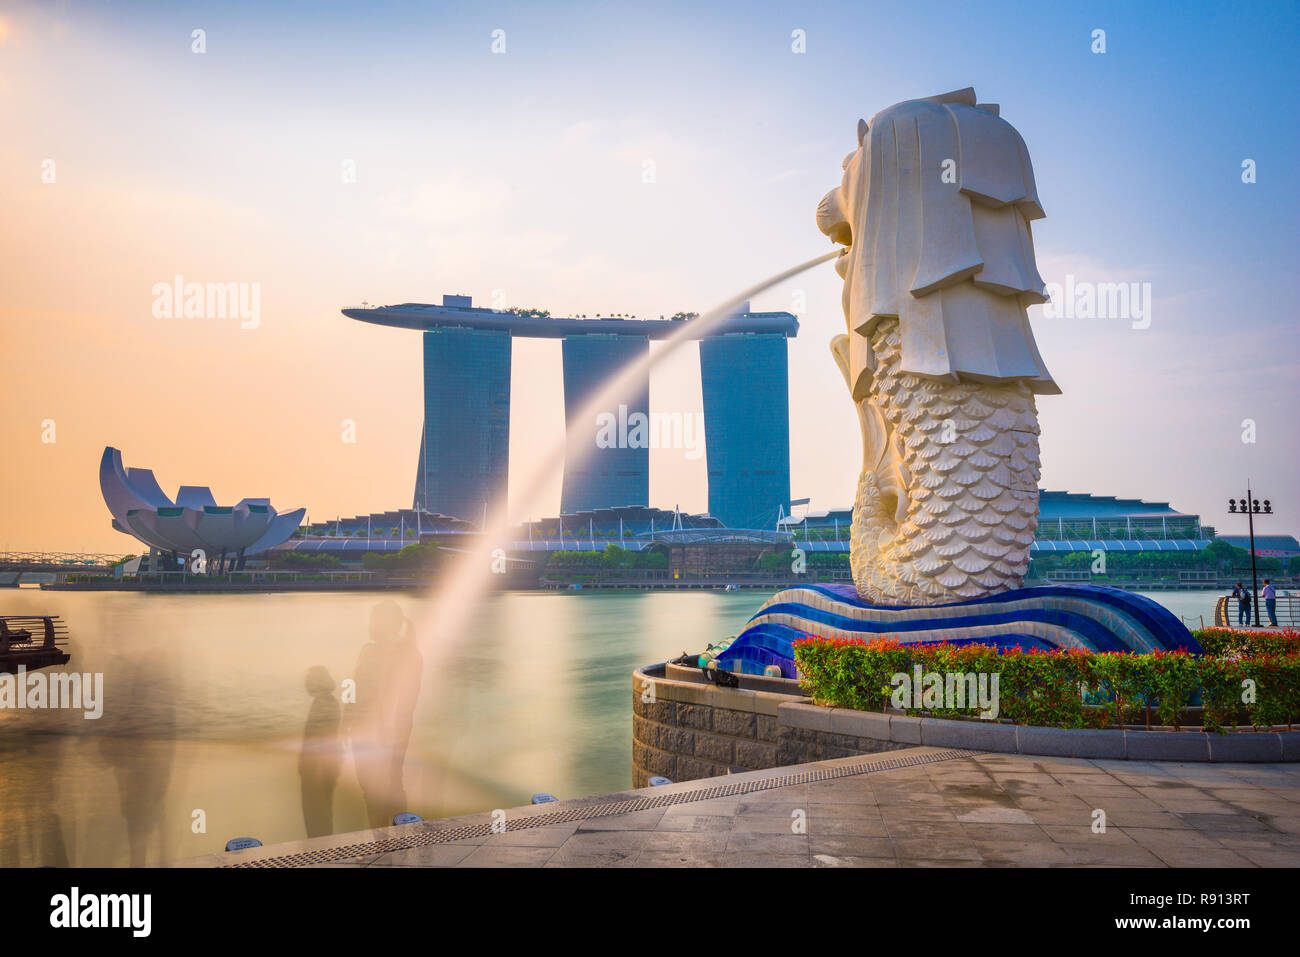 Singapour - septembre 3, 2015 : la fontaine et la statue du Merlion Singapour. La statue est considérée comme la personnification de Singapo Banque D'Images